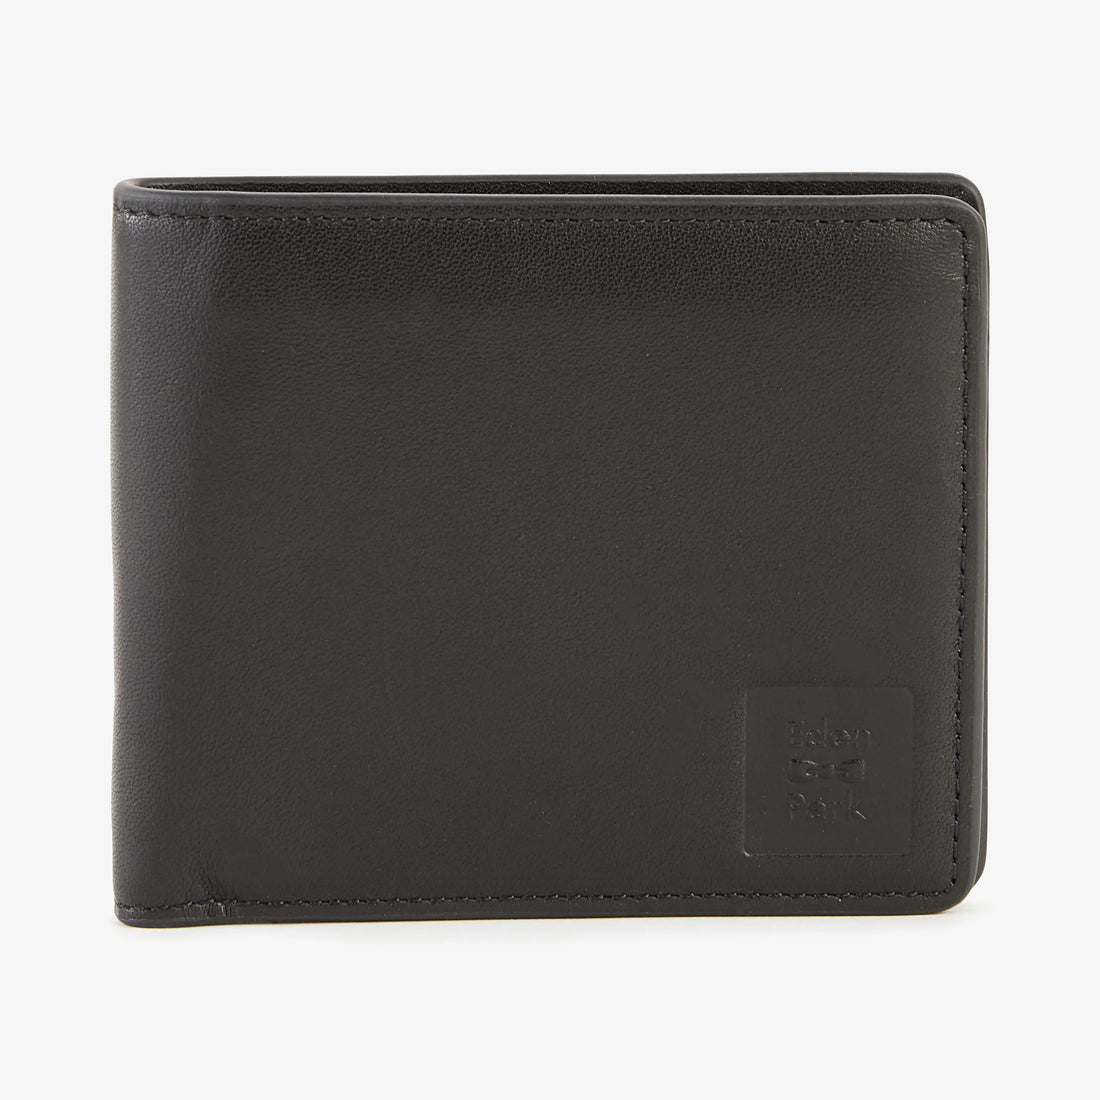 Black Leather Italian Wallet - 01